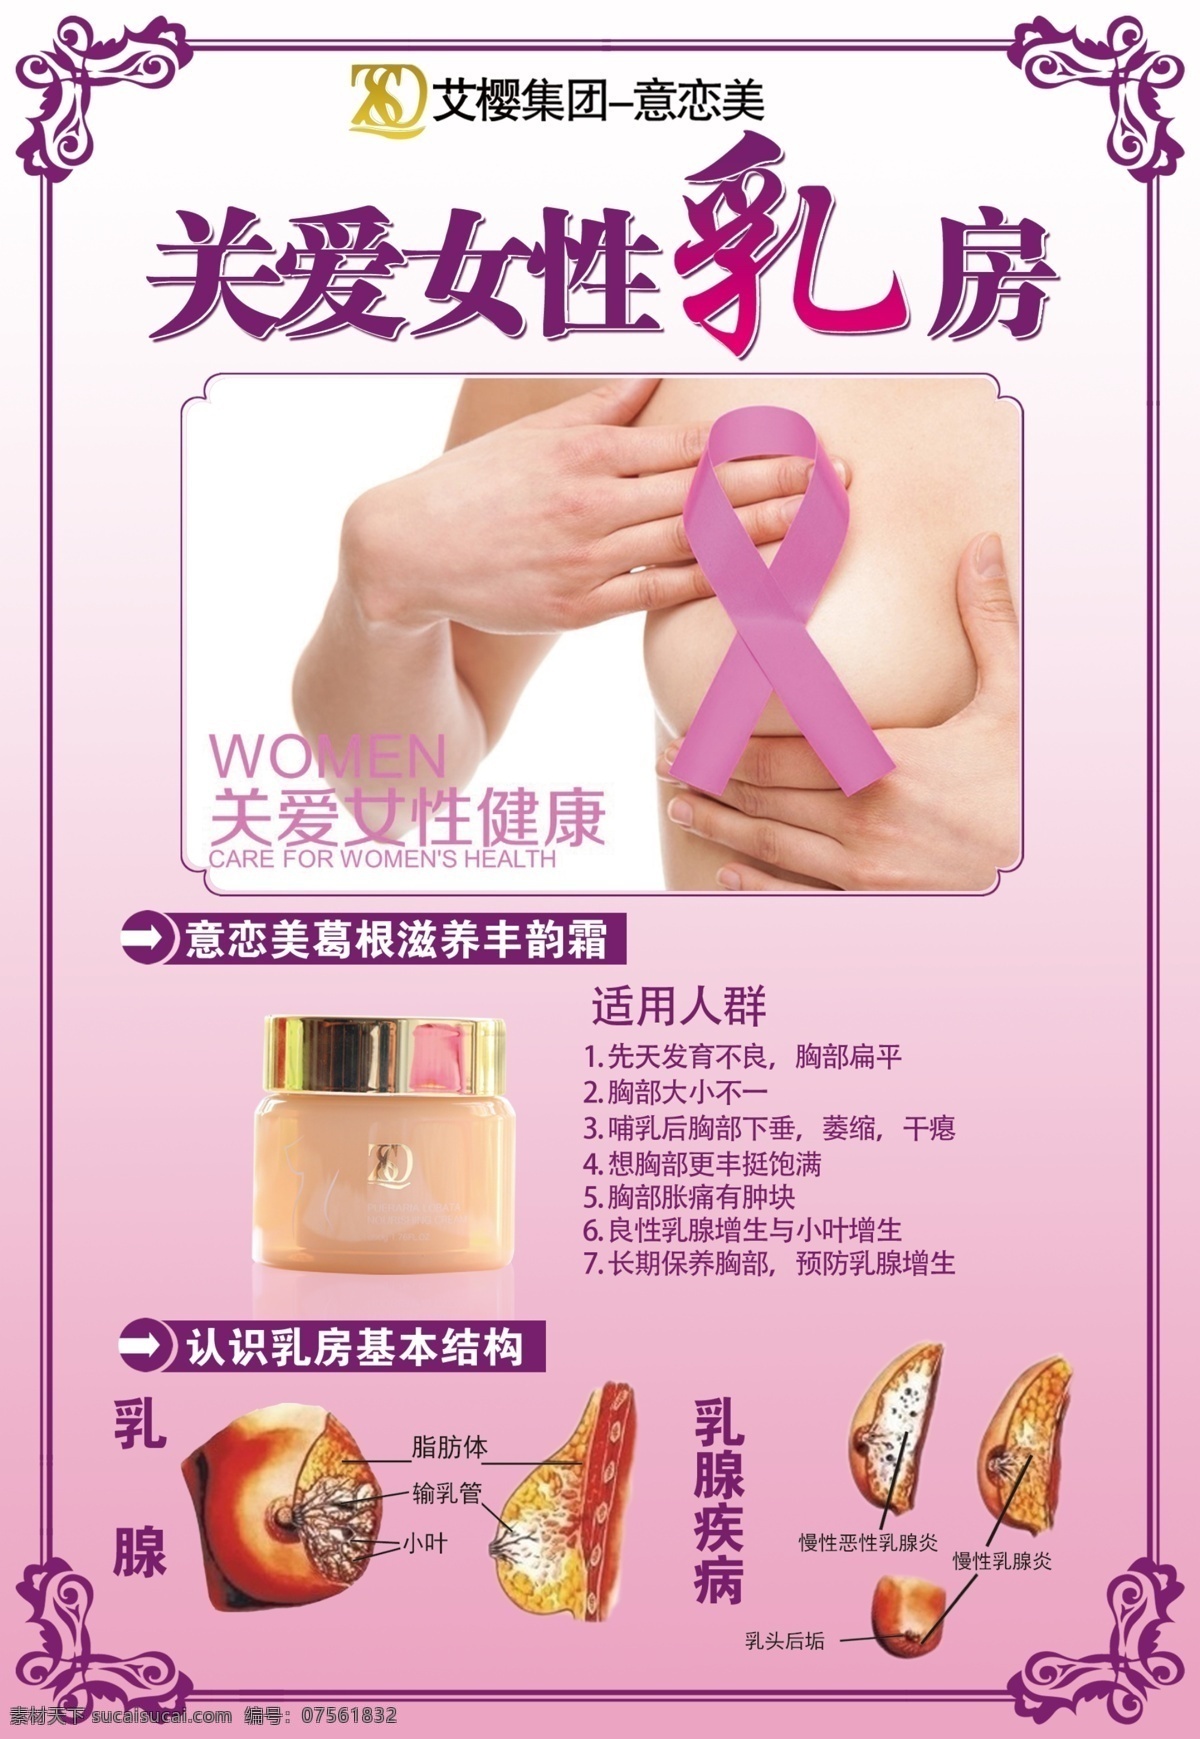 关爱女性 乳房 海报 关爱女性乳房 丰胸 健康 预防 美胸